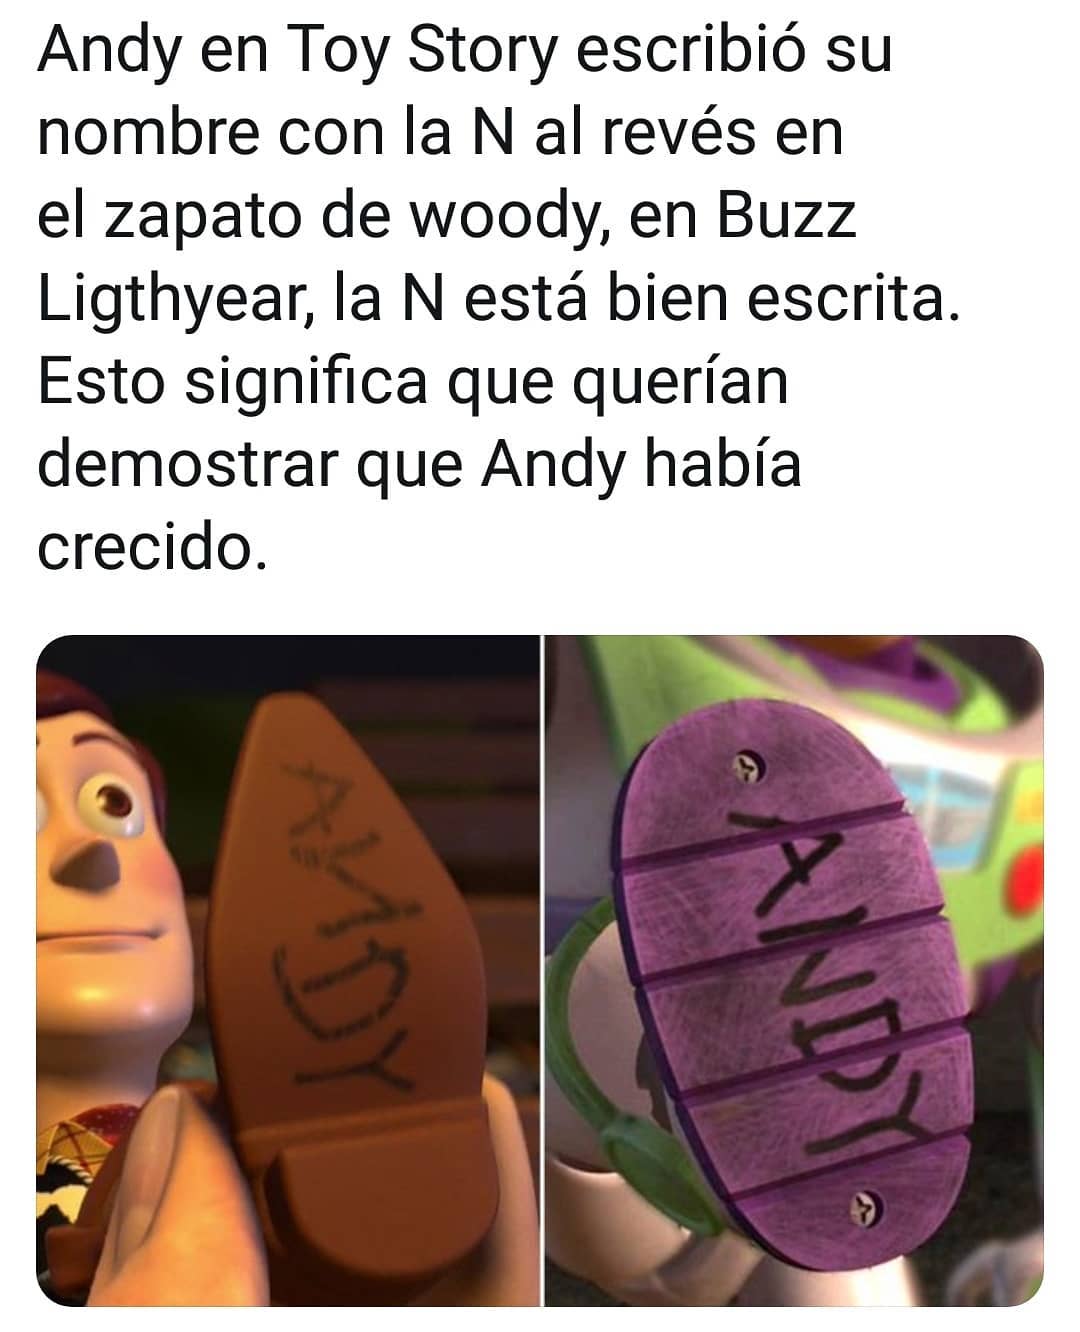 Andy en Toy Story escribió su nombre con la N al revés en el zapato de woody, en Buzz Ligthyear, la N está bien escrita. Esto significa que querían demostrar que Andy había crecido.